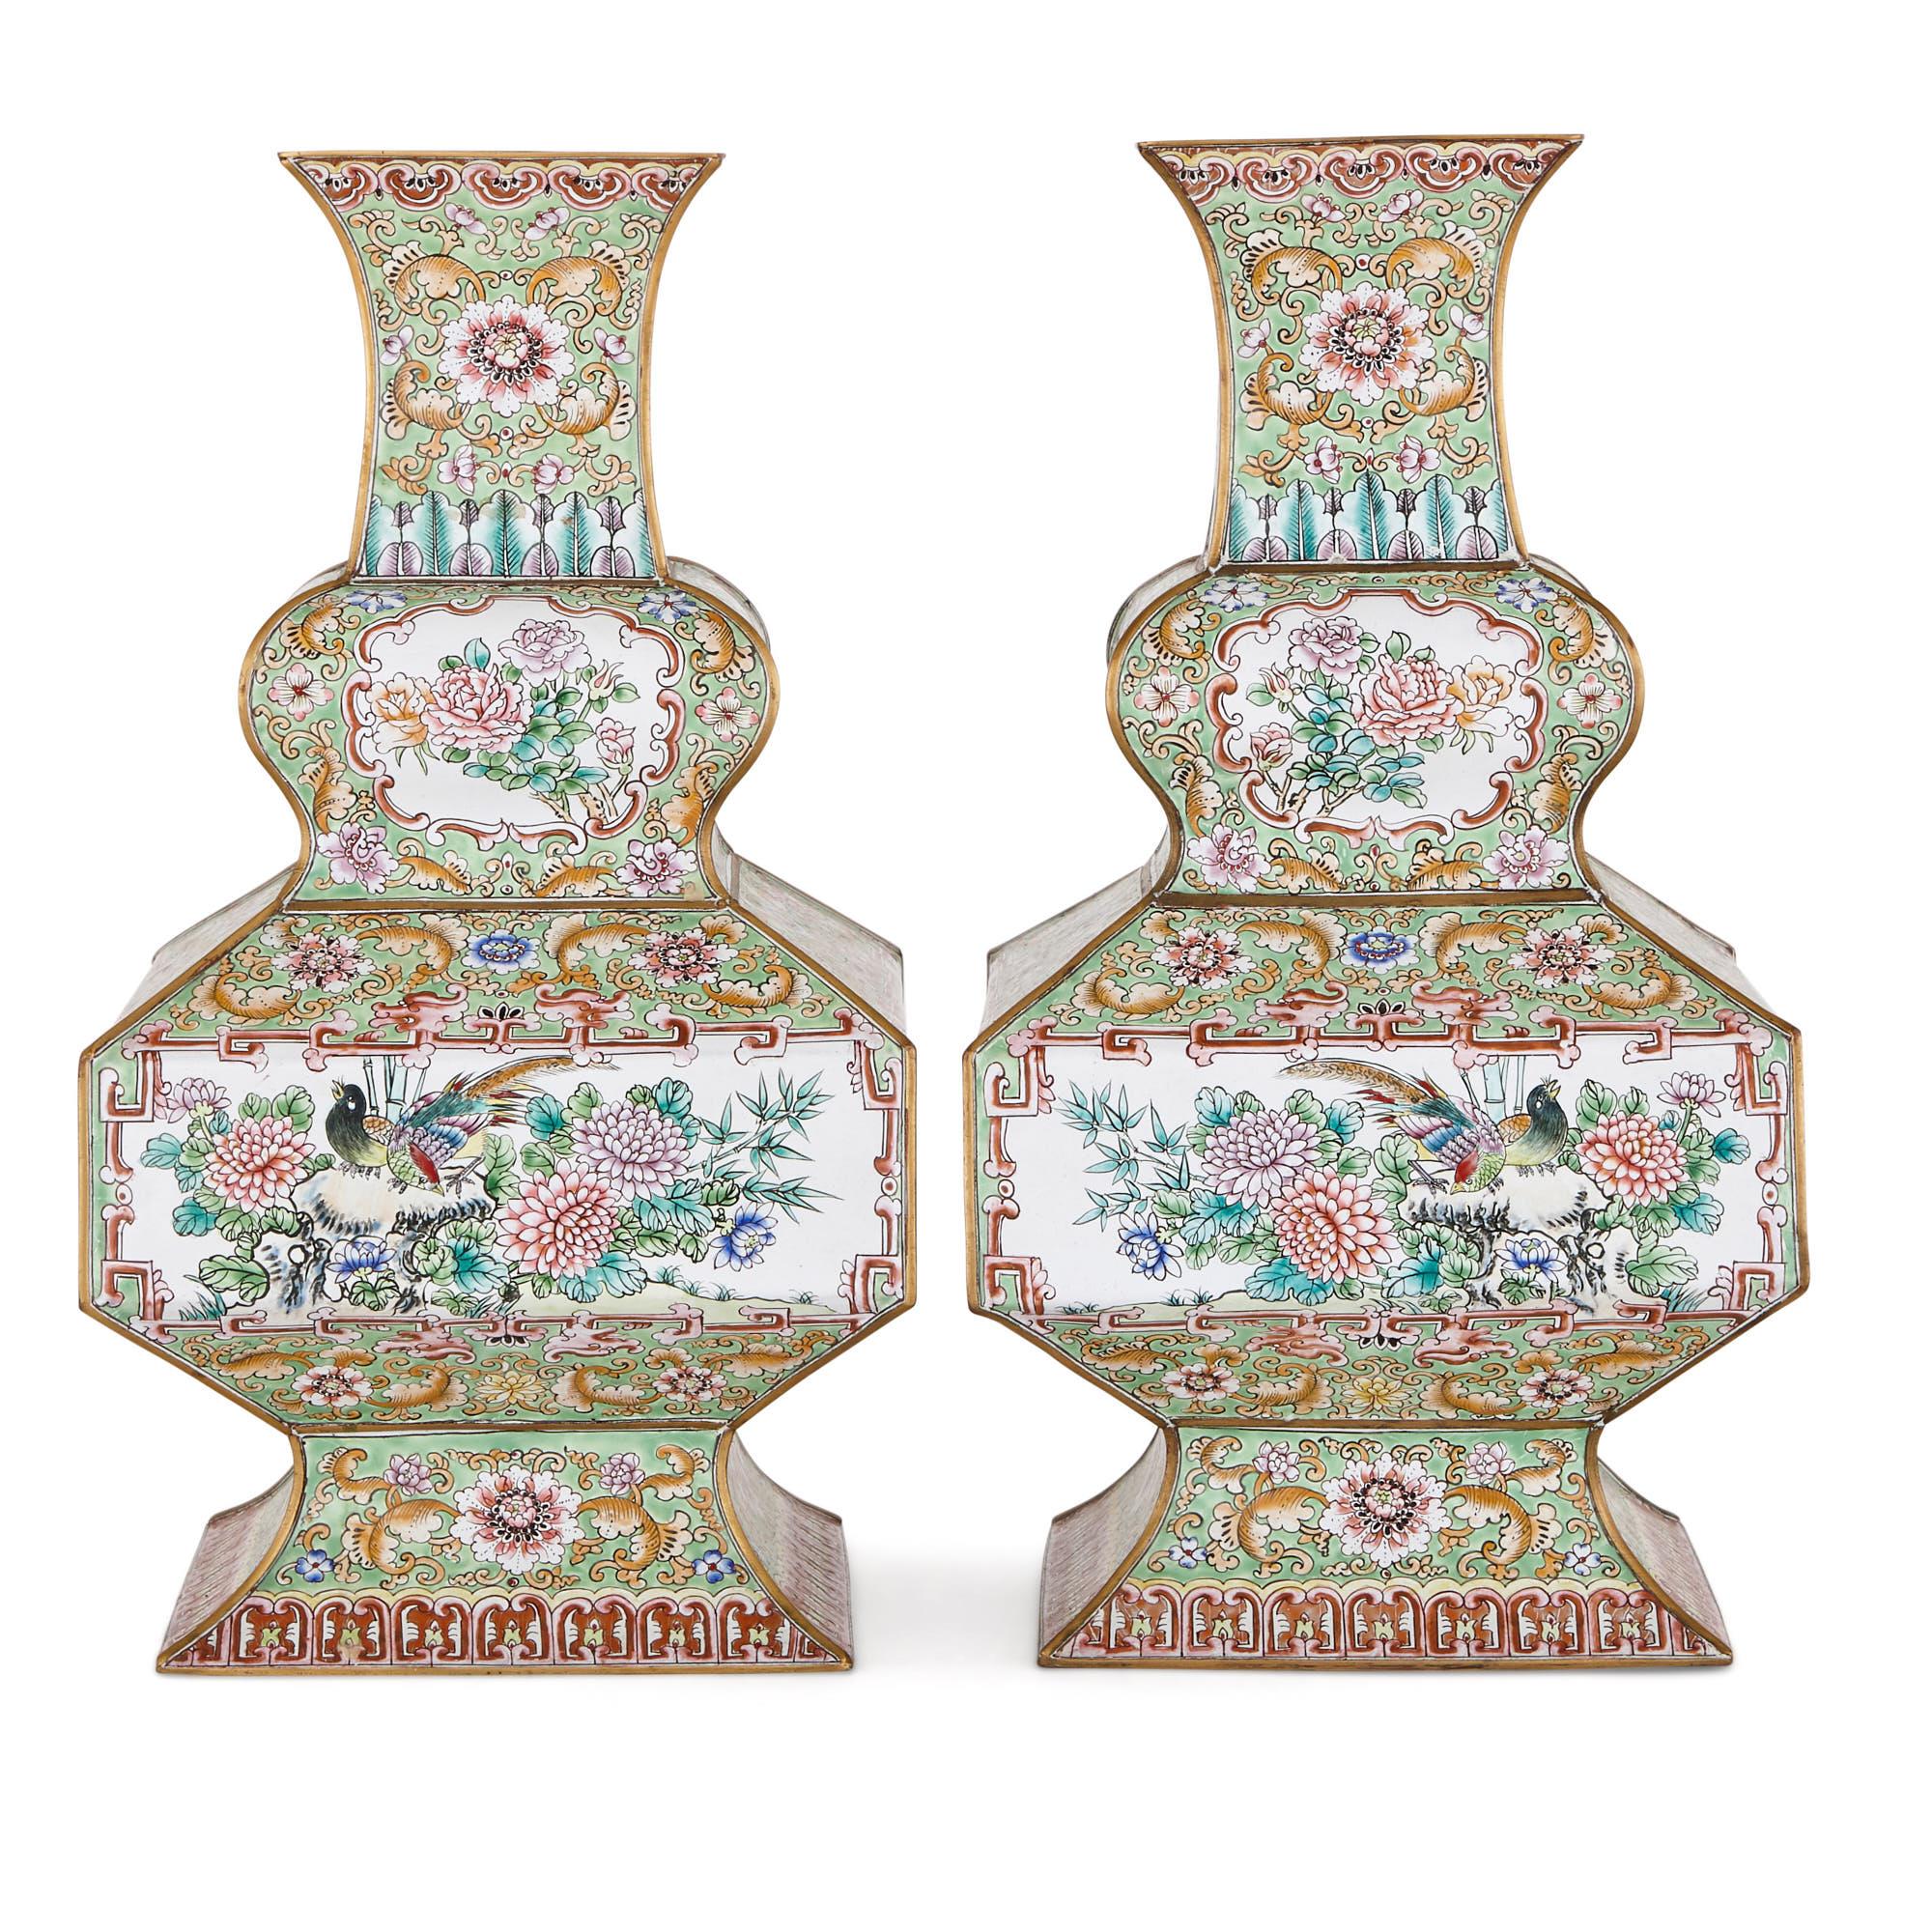 Ces vases élégants ont été créés au début du XXe siècle, dans la dernière décennie de la dynastie Qing (1644-1911). Ils sont recouverts de magnifiques motifs en émail cloisonné. Dans la méthode du cloisonné, des bandes de métal sont appliquées à la